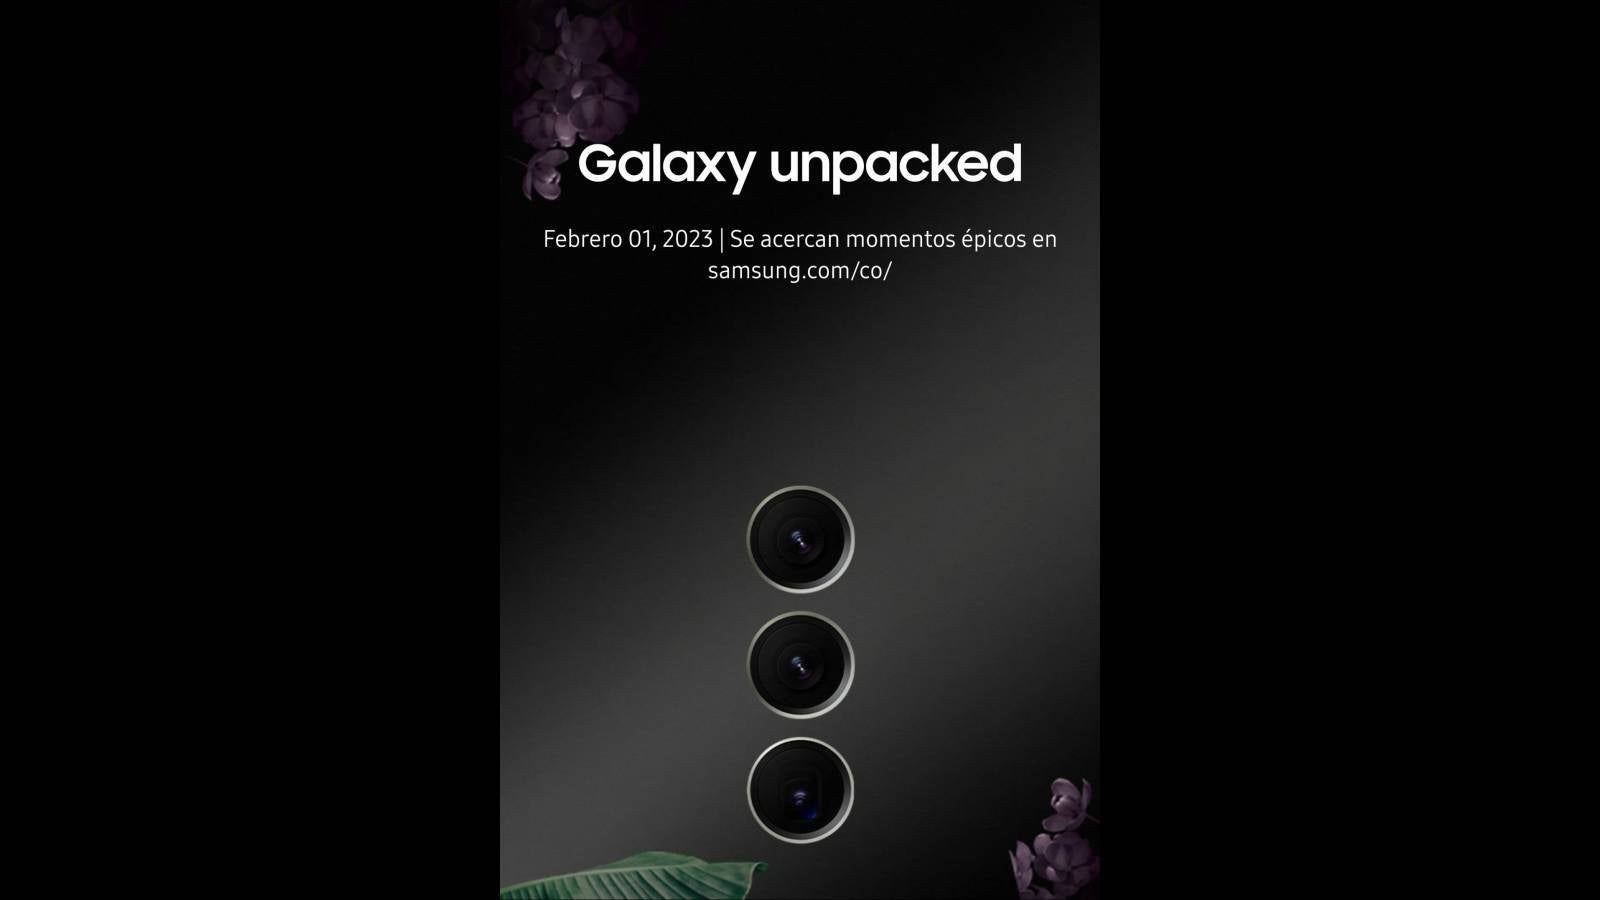 El cartel de anuncio del Galaxy S23 dice 